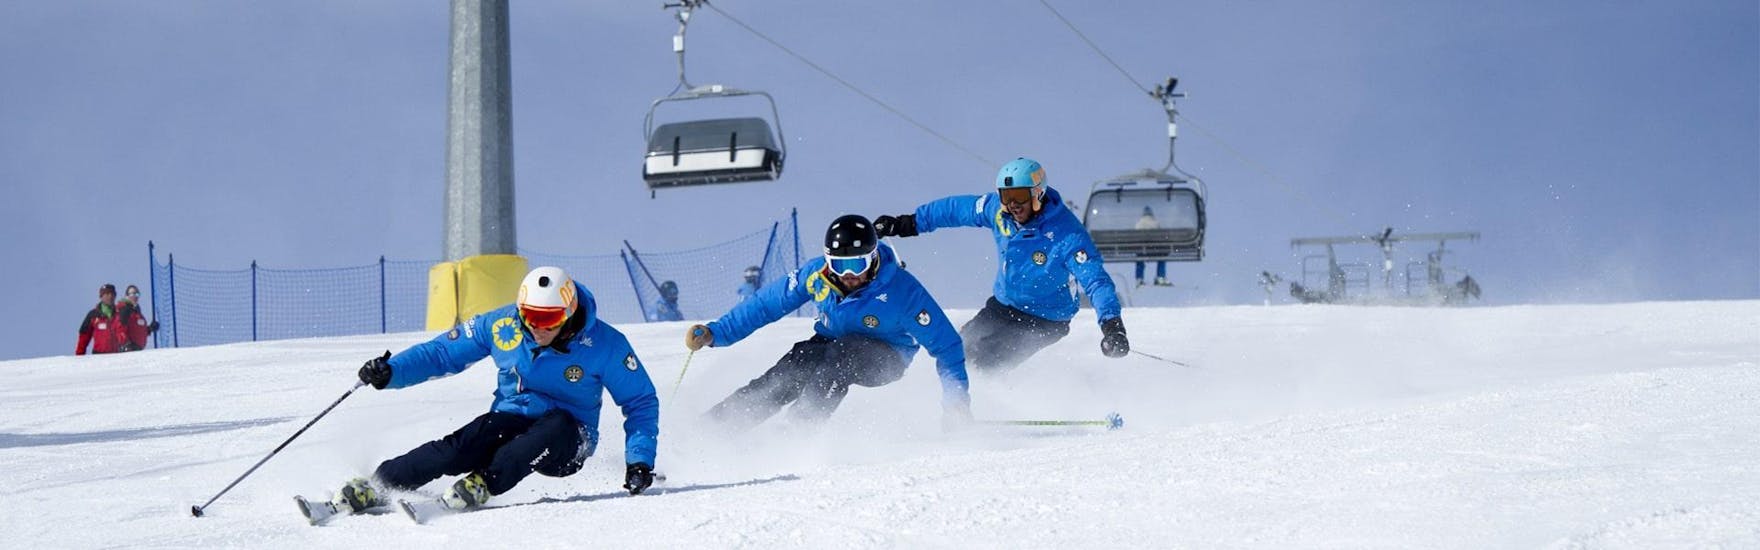 Trois skieurs descendent la pente grâce aux techniques apprises pendant les cours de ski particuliers pour adultes - tous niveaux de l'école de ski Scuola di Sci Azzurra Livigno.